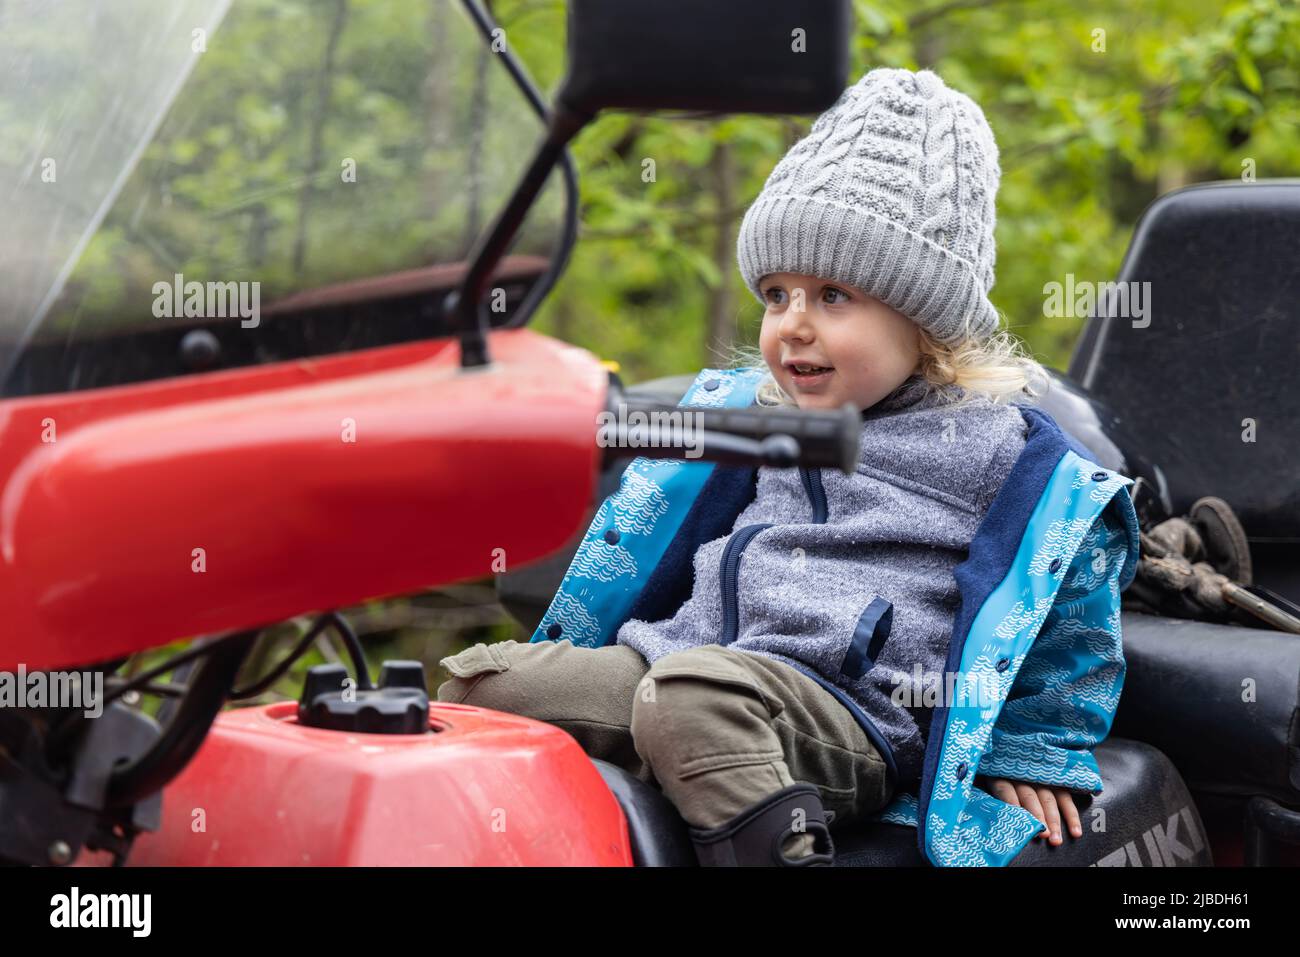 Ein ehrliches Porträt mit selektivem Fokus auf einen glücklichen, vierjährigen Jungen, der auf dem Fahrersitz eines Quad-Bikes zurückgefallen ist. Platz auf Seite kopieren. Stockfoto